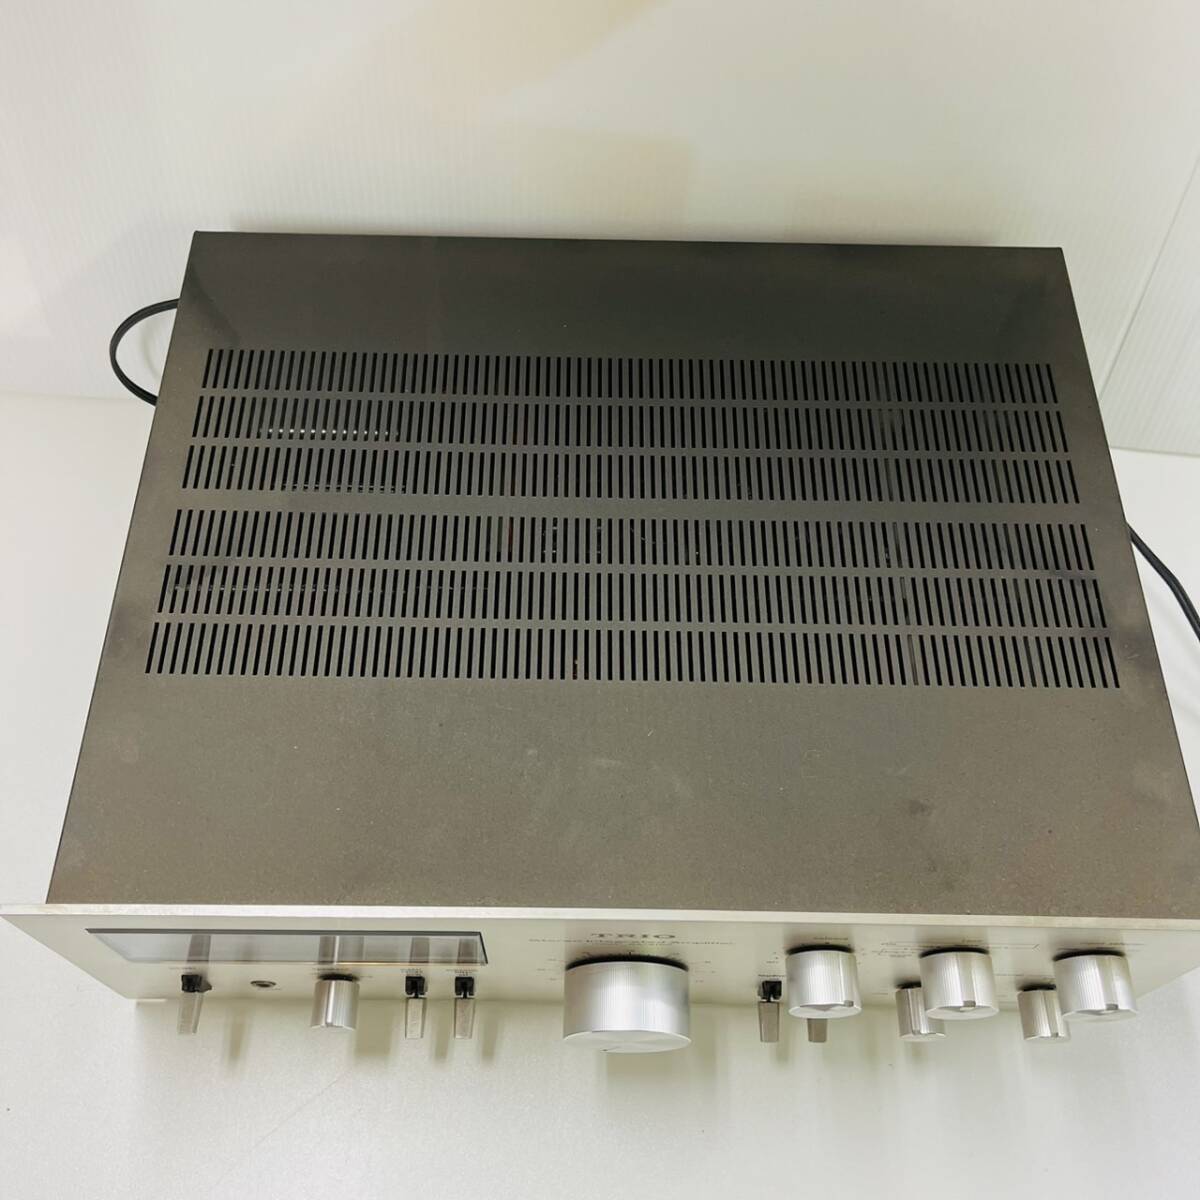 16021/TRIO KA-6100 STEREO Integrated Amplifier トリオ オーディオ機器の画像5